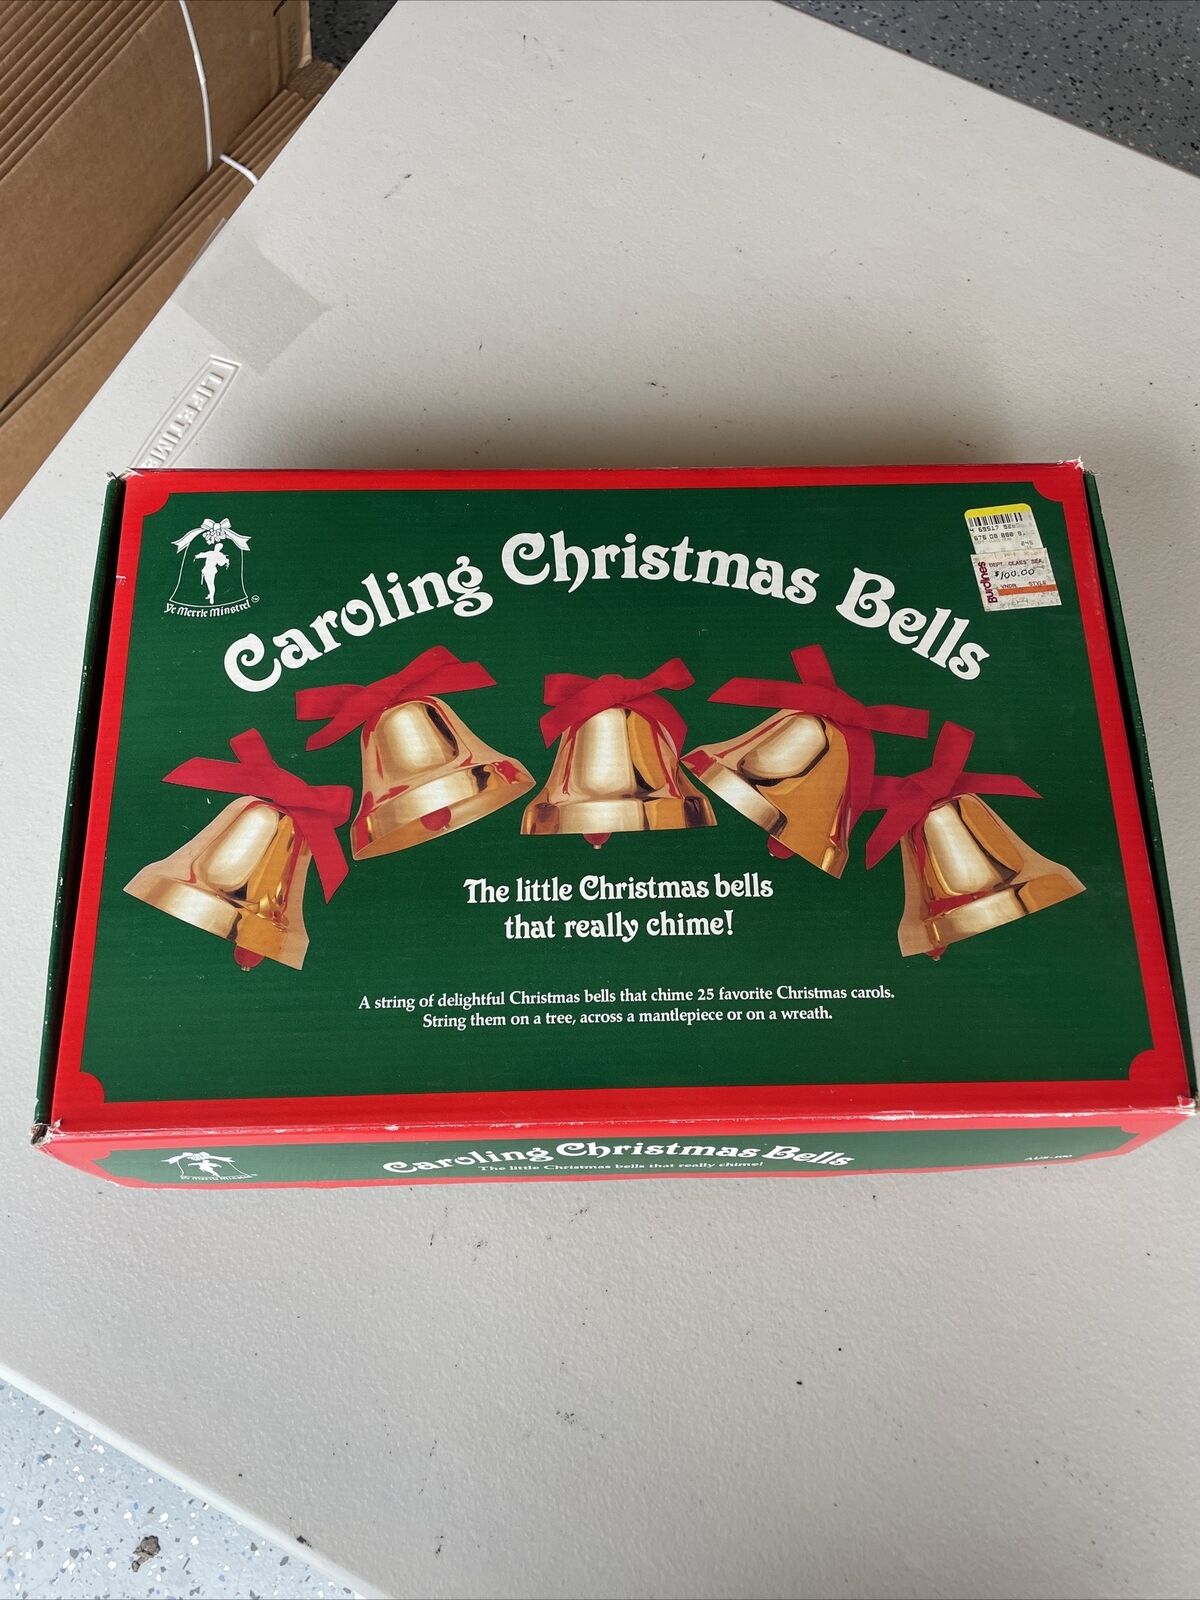 Ye Merrie Minstrel Caroling Christmas Bells 25 Favorite Carols Preowned Nice